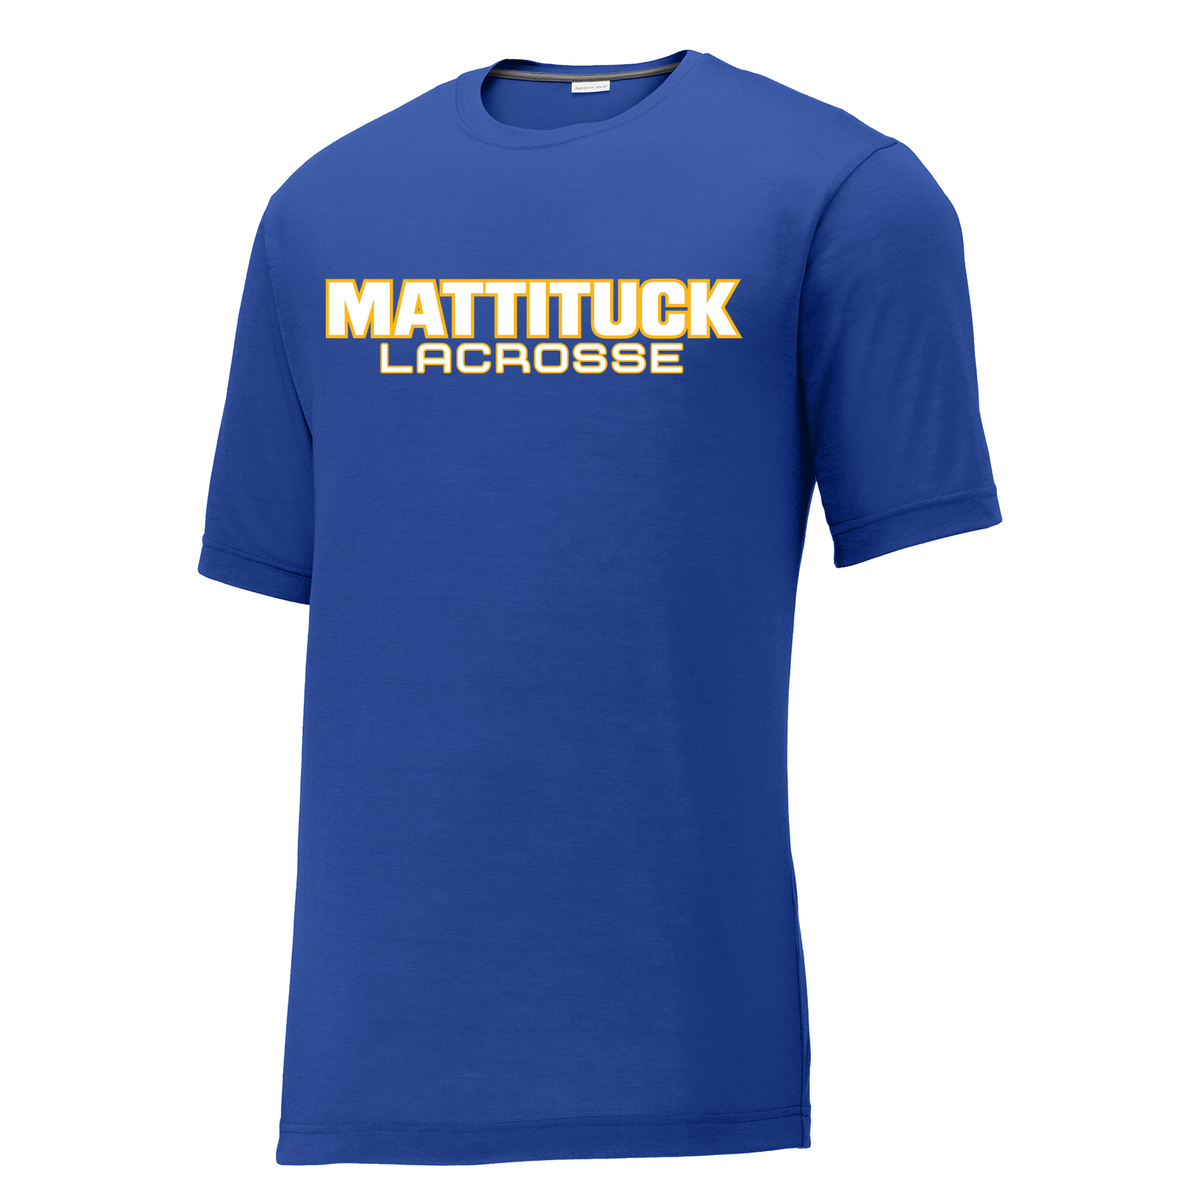 Mattituck Lacrosse  CottonTouch Performance T-Shirt